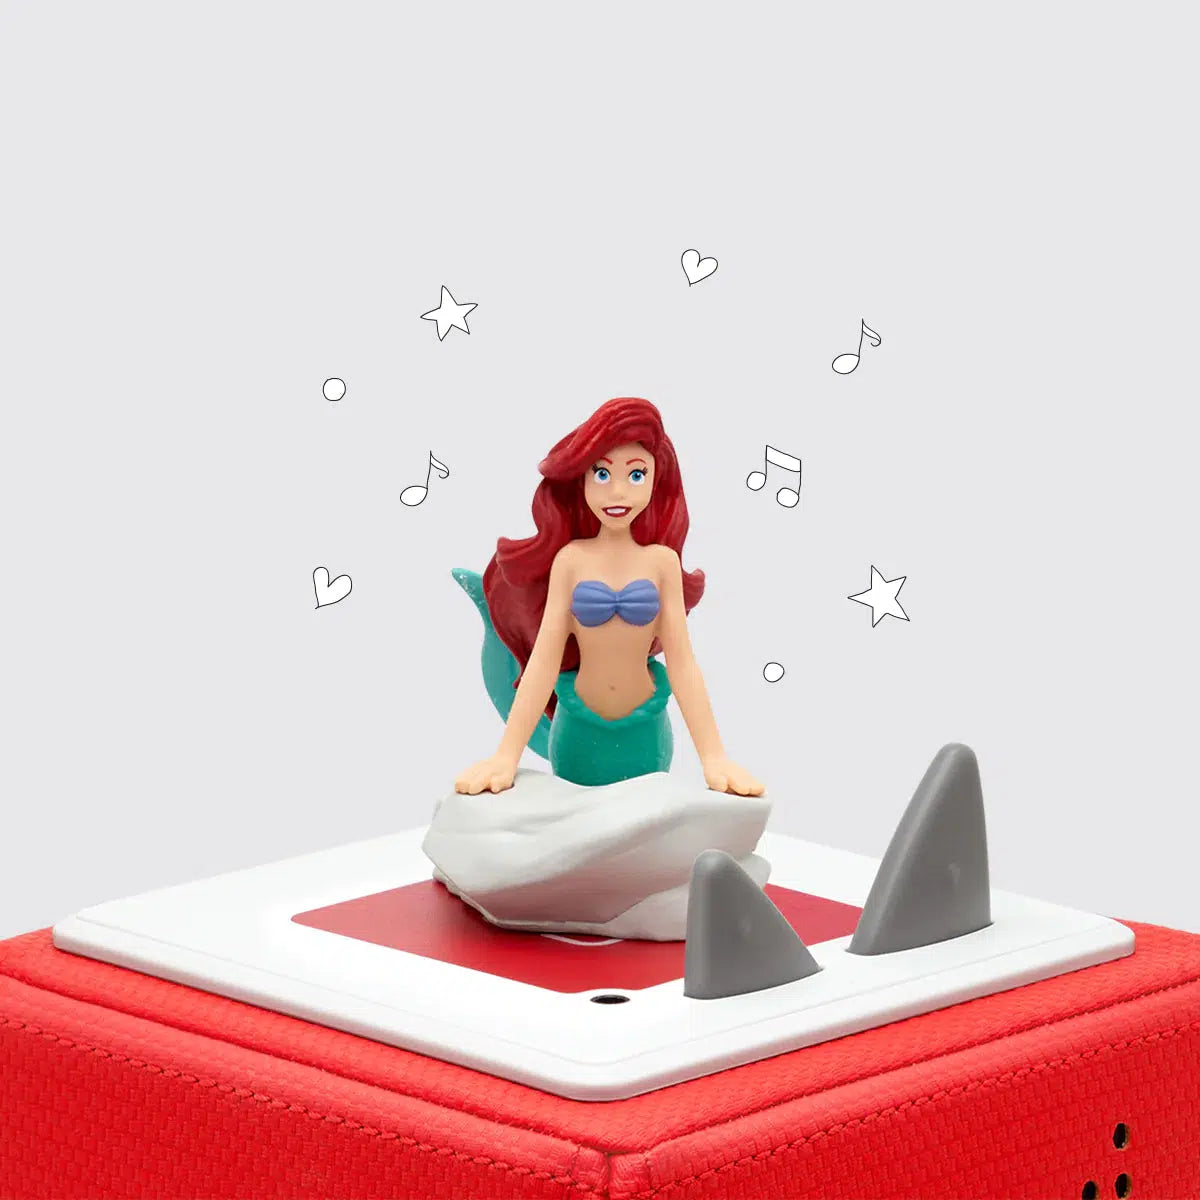 Tonies-Tonies Disney The Little Mermaid-10000503-Legacy Toys